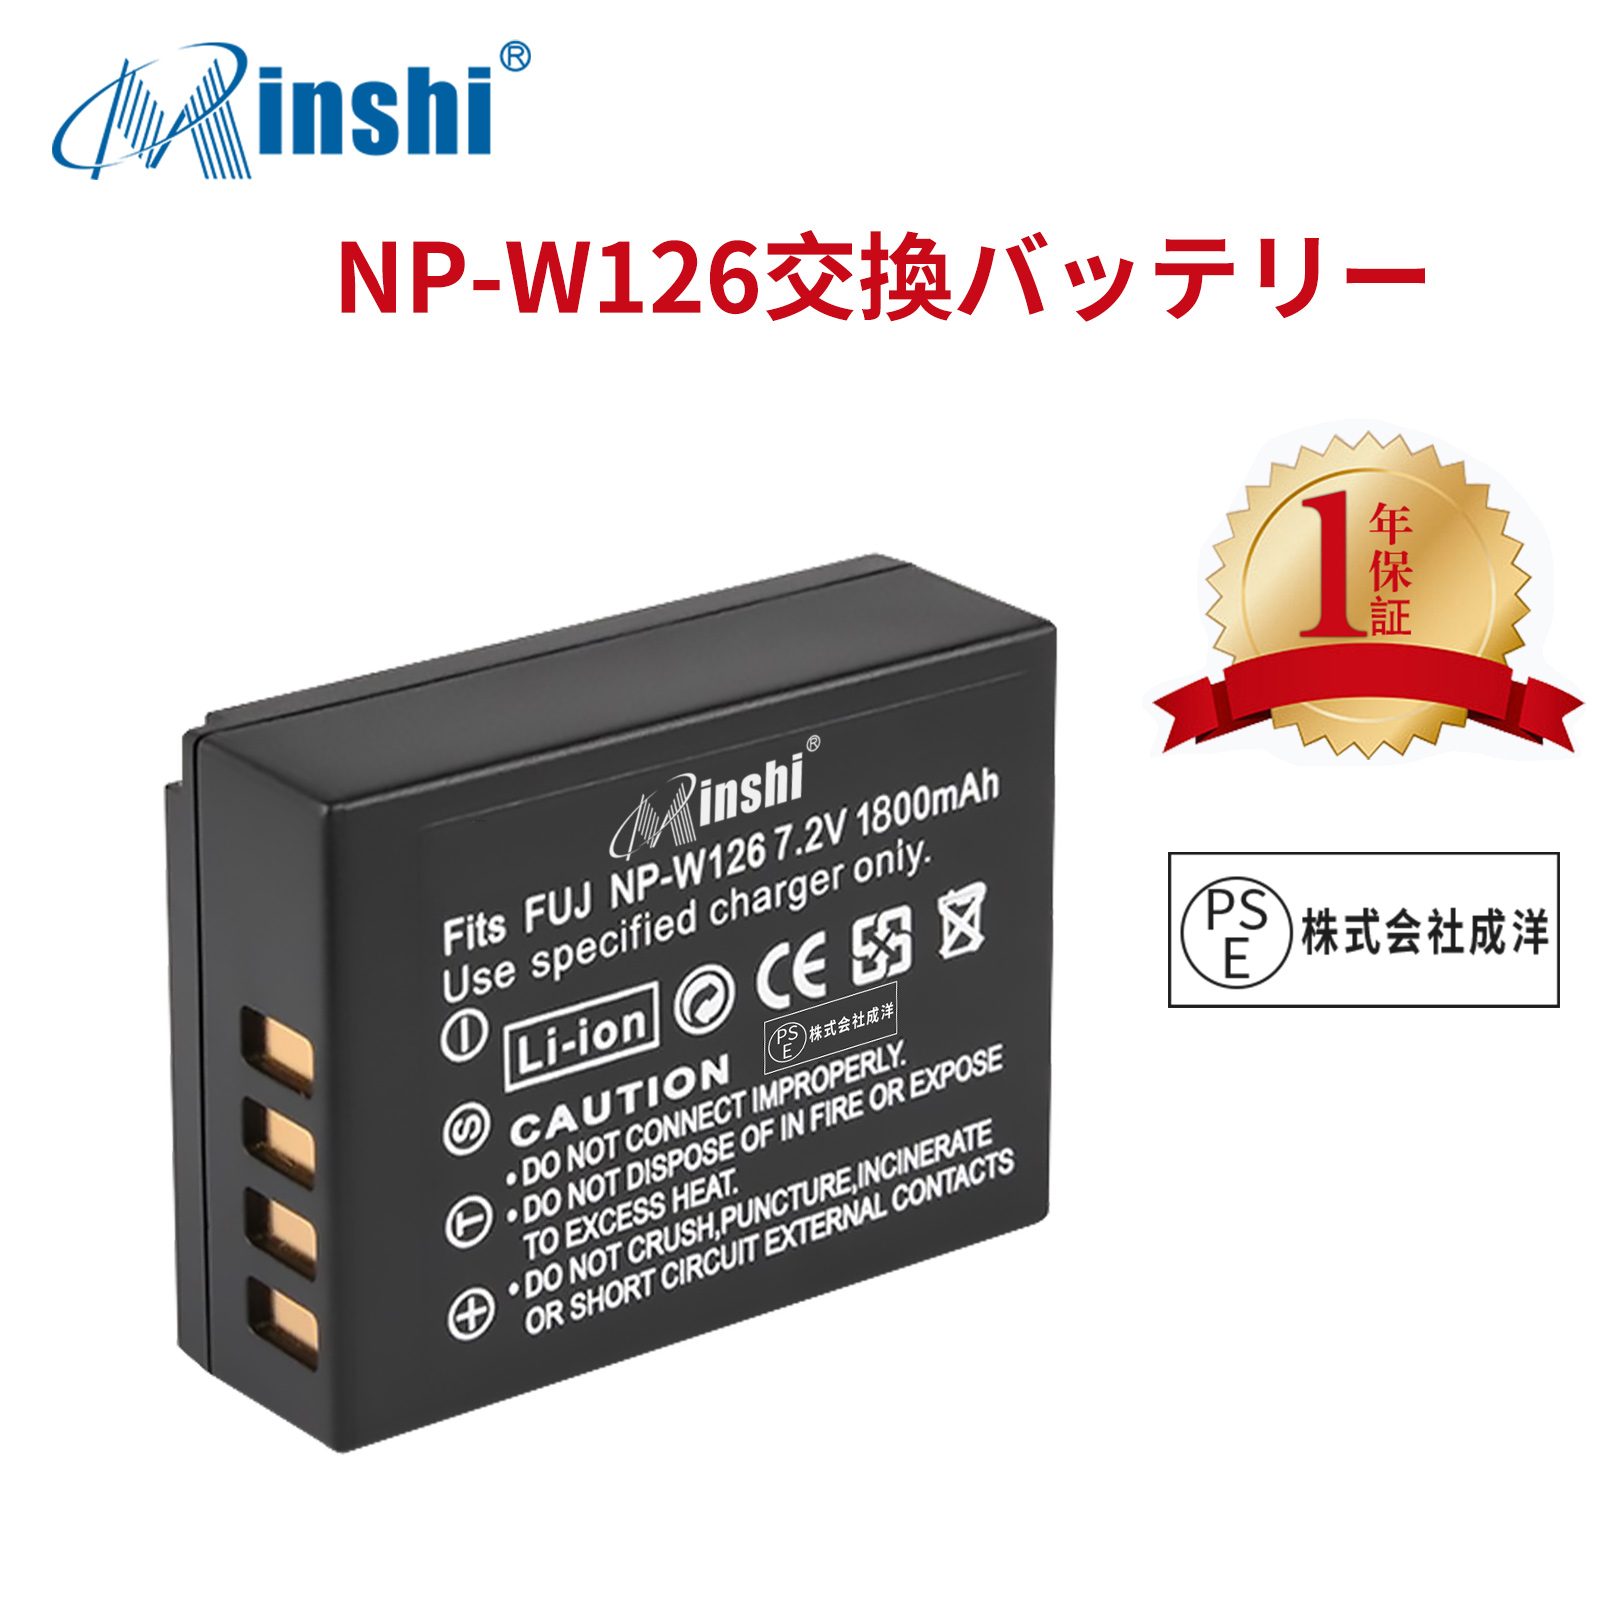 【1年保証】minshi FUJIFILM X-Pro3 NP-W126S 【1800mAh 7.2V】 NP-W126 NP-W126S高品質 NP-W126S NP-W126互換バッテリー